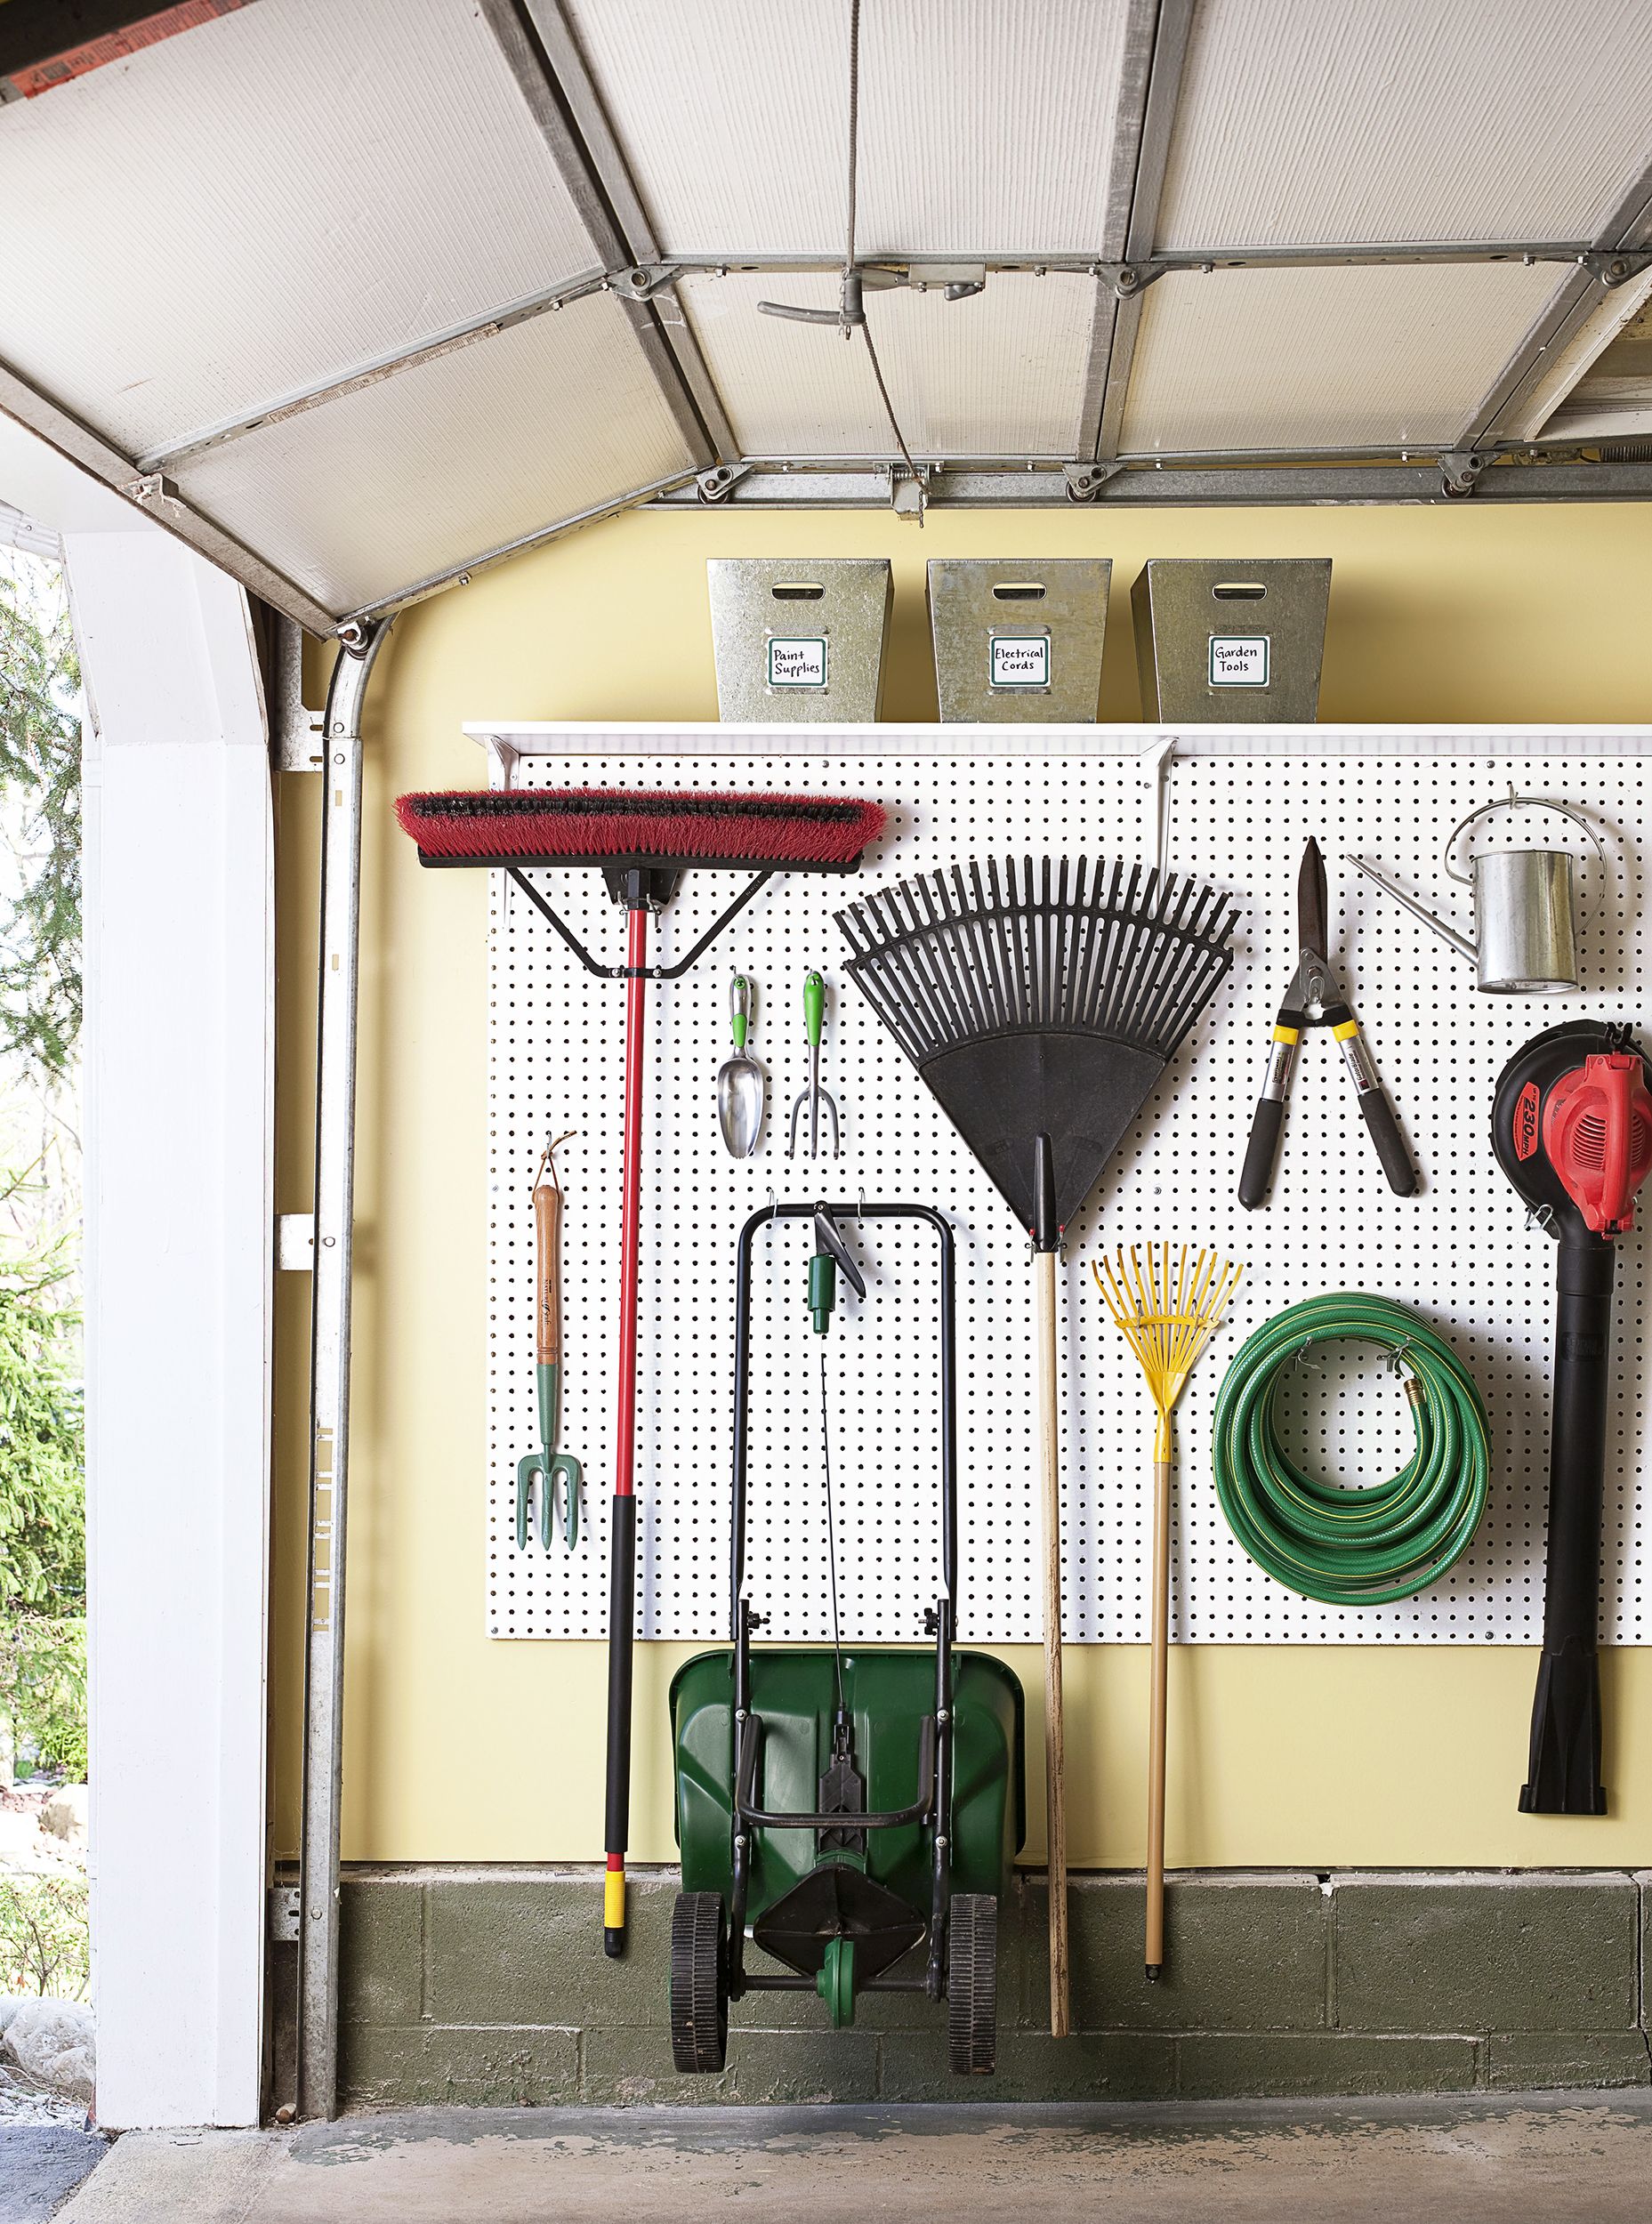 Bin Kit Wall Garage Storage Parts Bins Tool DIY Organiser Shelving Unit 